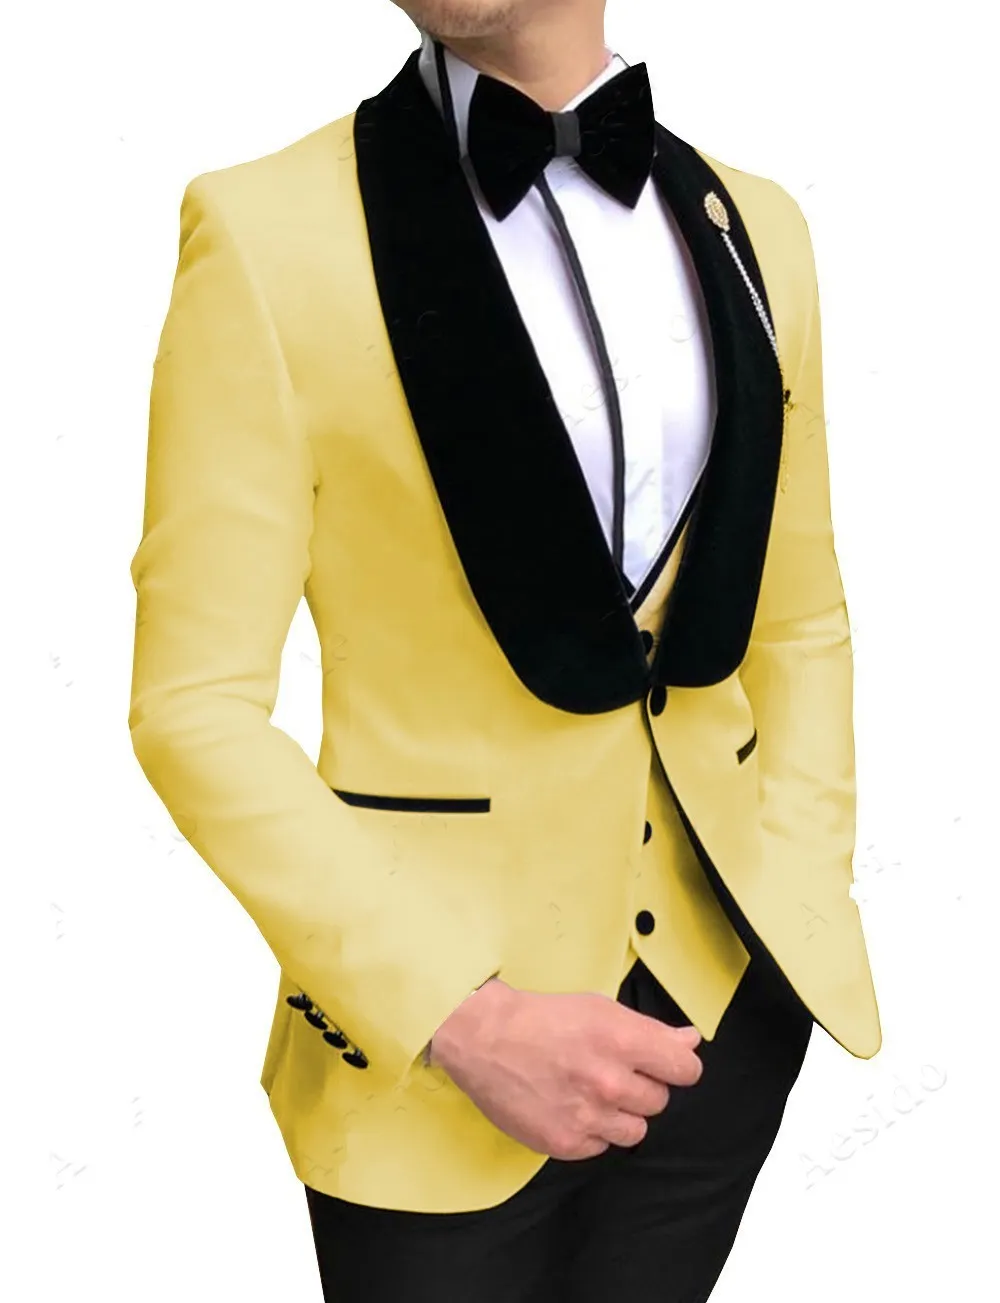 패션 노란색 신랑 턱시도 블랙 벨벳 옷깃 남성 웨딩 턱시도 남성 재킷 재킷 우수한 3 개 정장 (재킷 + 바지 + 넥타이 + 조끼) 826